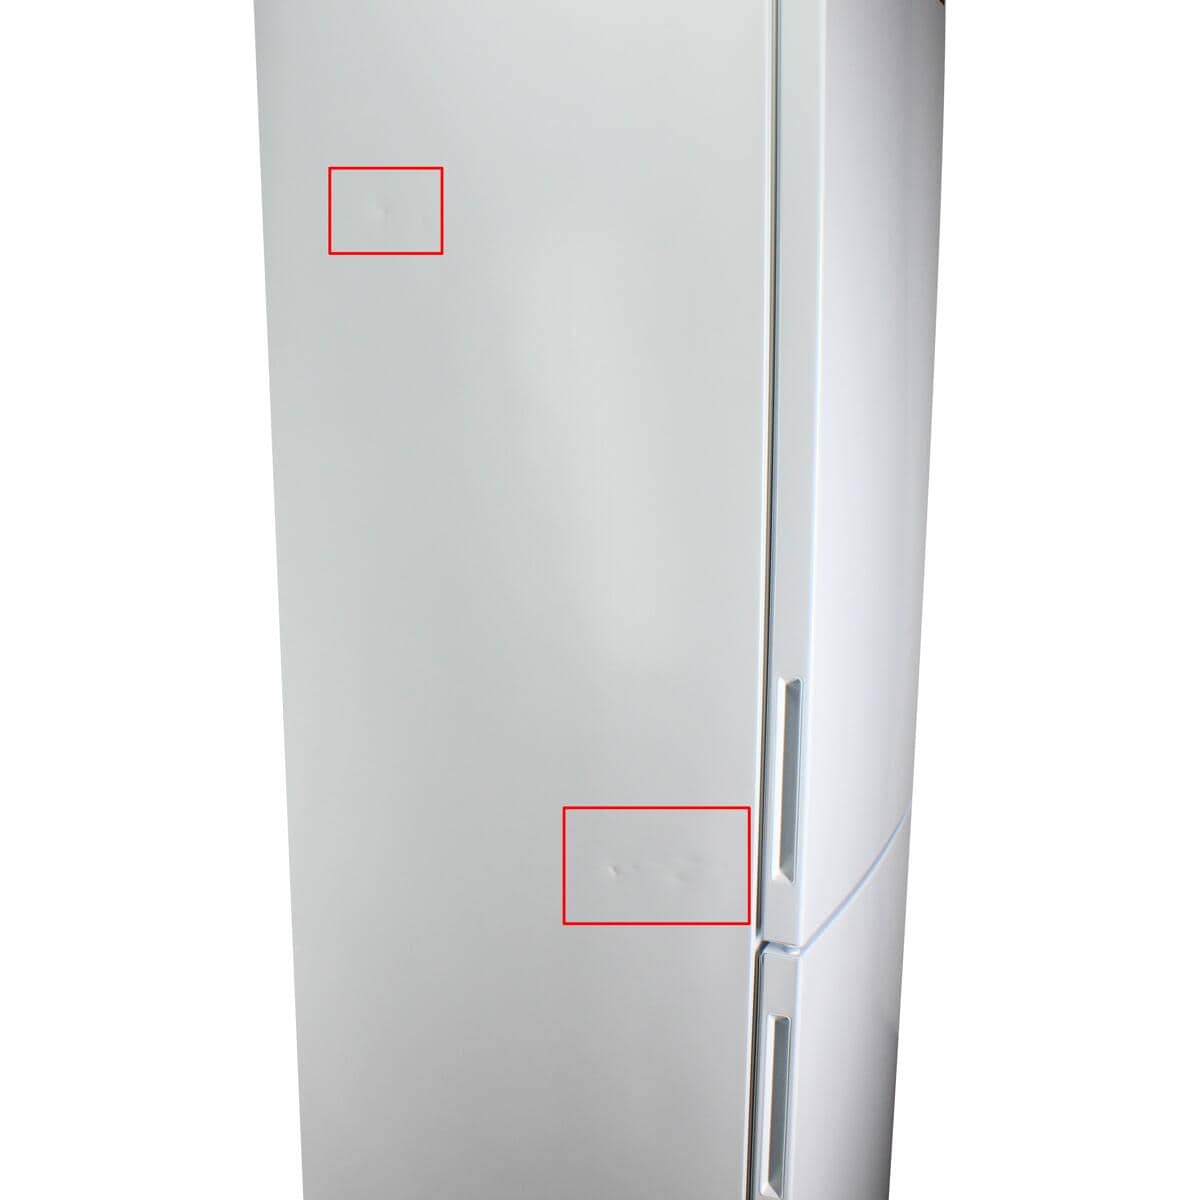 Multi-Airflow breit LED LG Stand-Kühl-Gefrierkombination Liter Nullzone weiß 384 Beleuchtung Frostfrei 59,5cm GBP62SWNAC